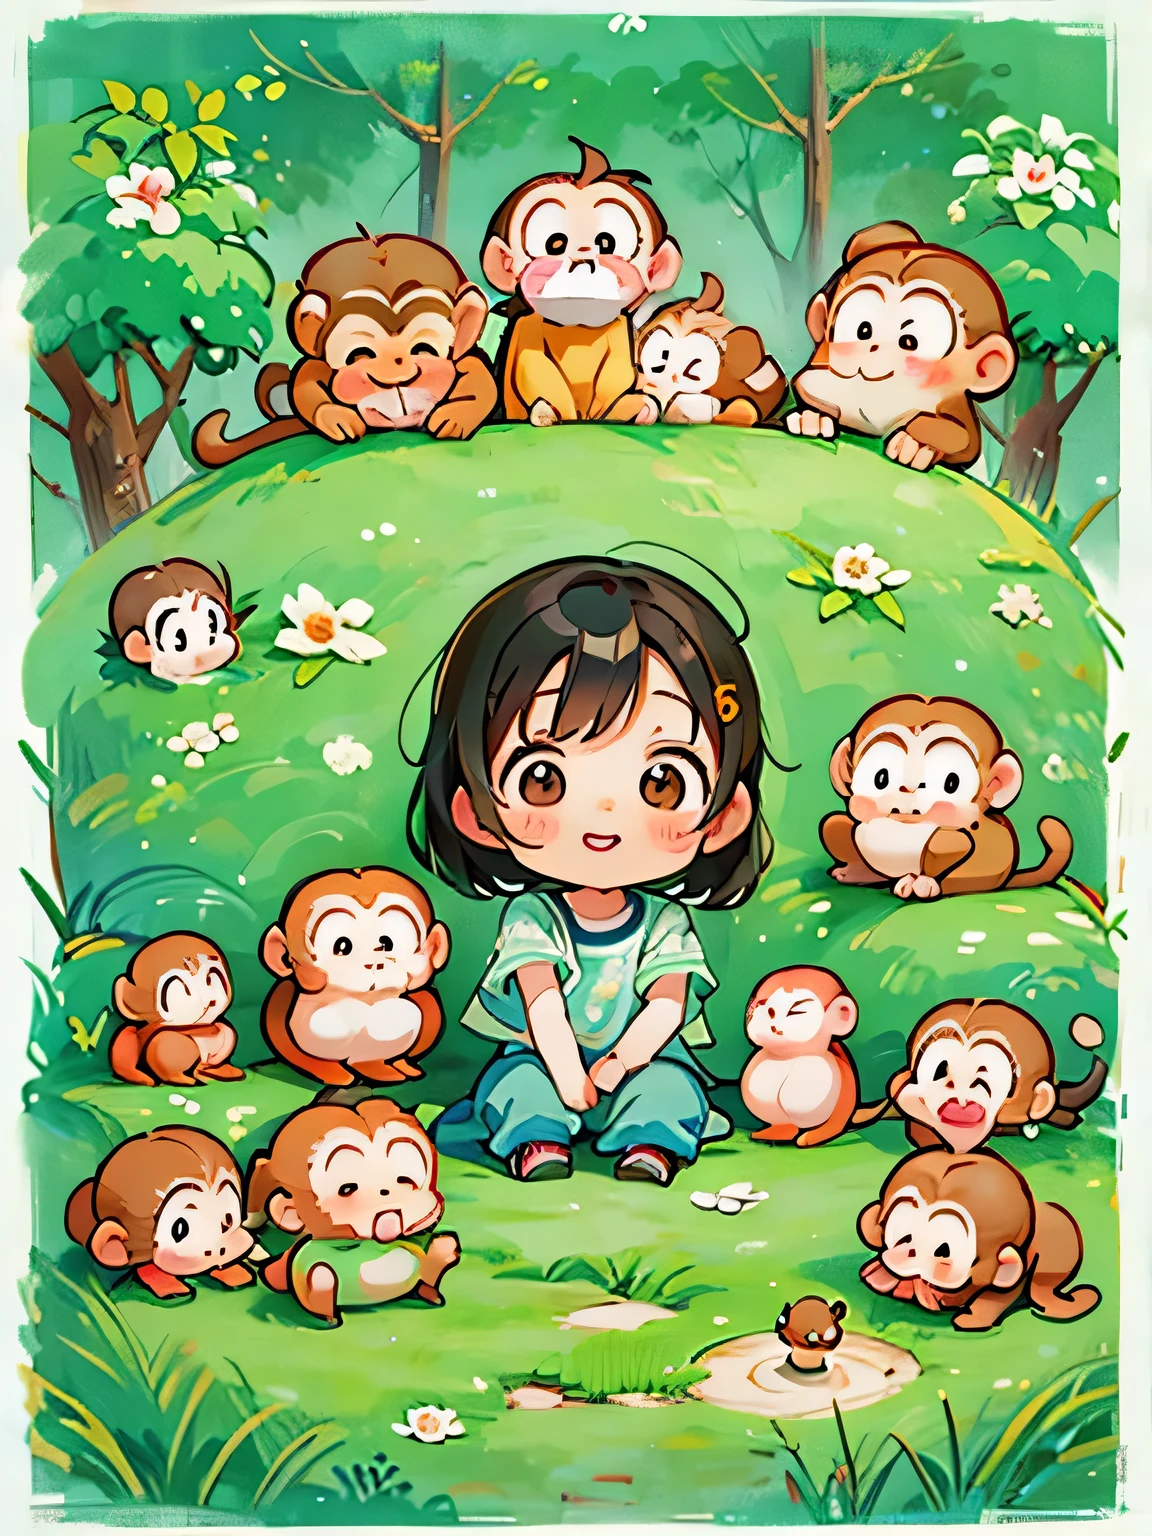 Al estilo Ai Yazawa, Diseño Kawaii, Chibi、lindo mono, bosque de monos